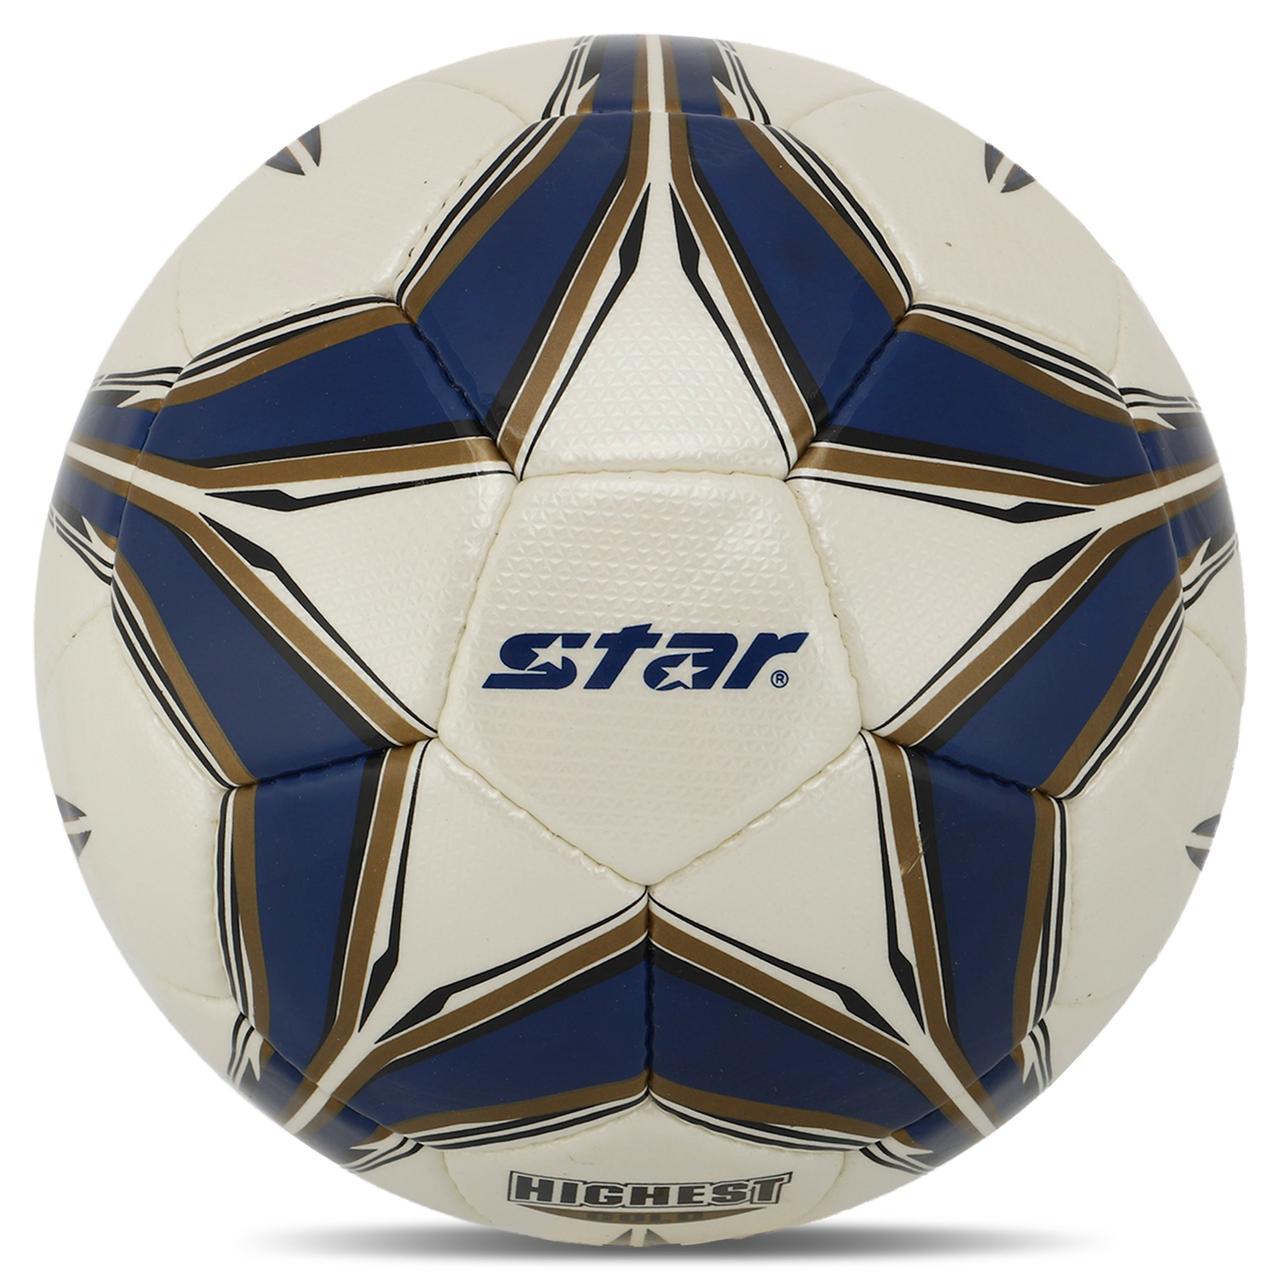 М'яч футбольний STAR HIGHEST GOLD SB4015C No5 Composite Leather